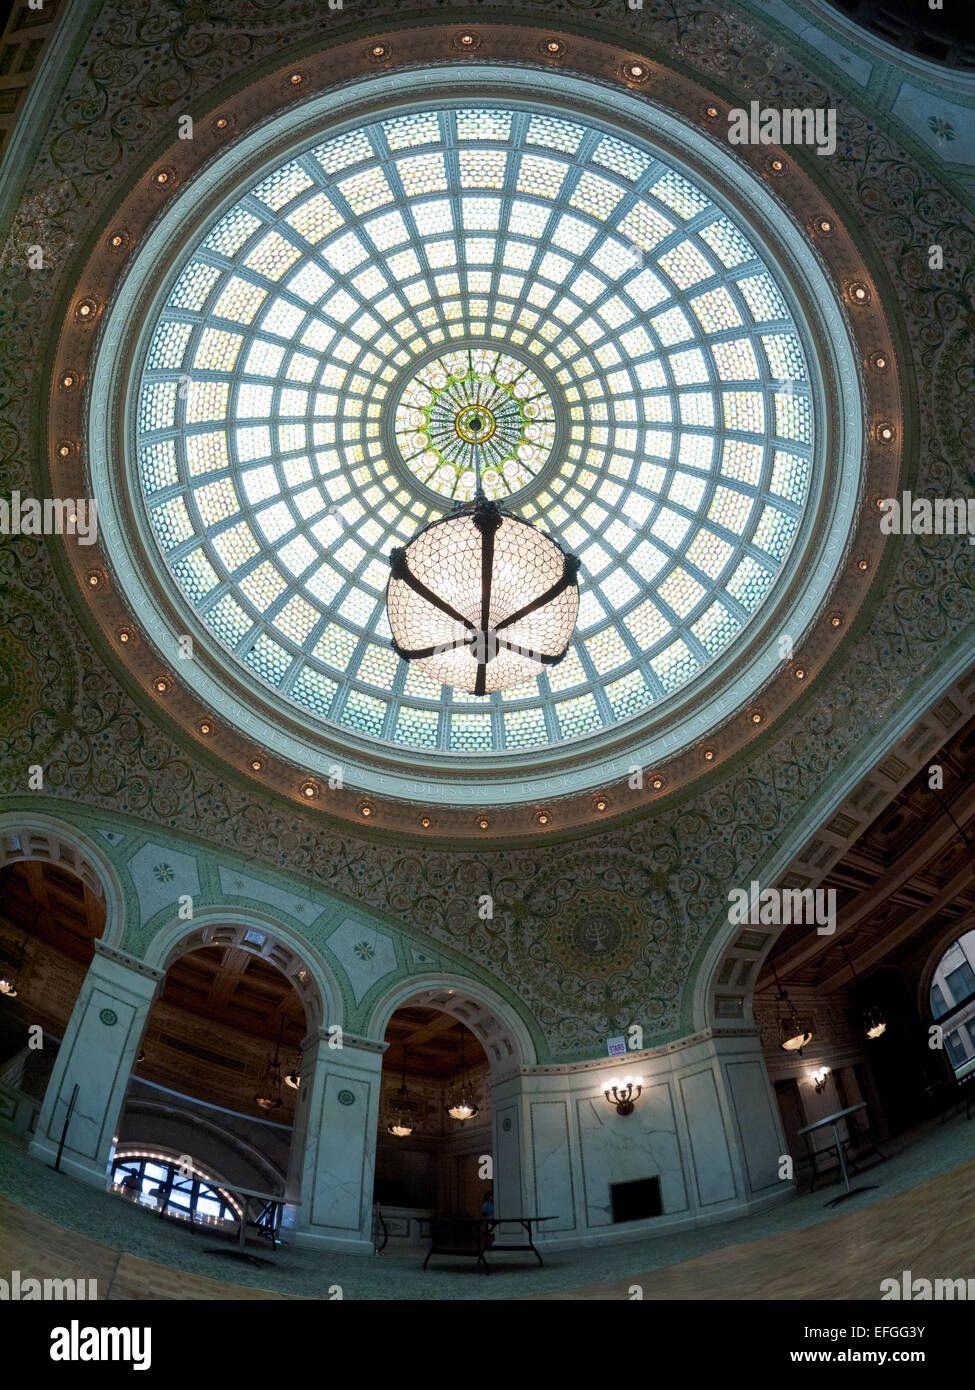 Un fisheye, grand angle de visualisation de Preston Bradley Hall et le plus grand dôme en verre Tiffany. Centre culturel de Chicago, Chicago. Banque D'Images